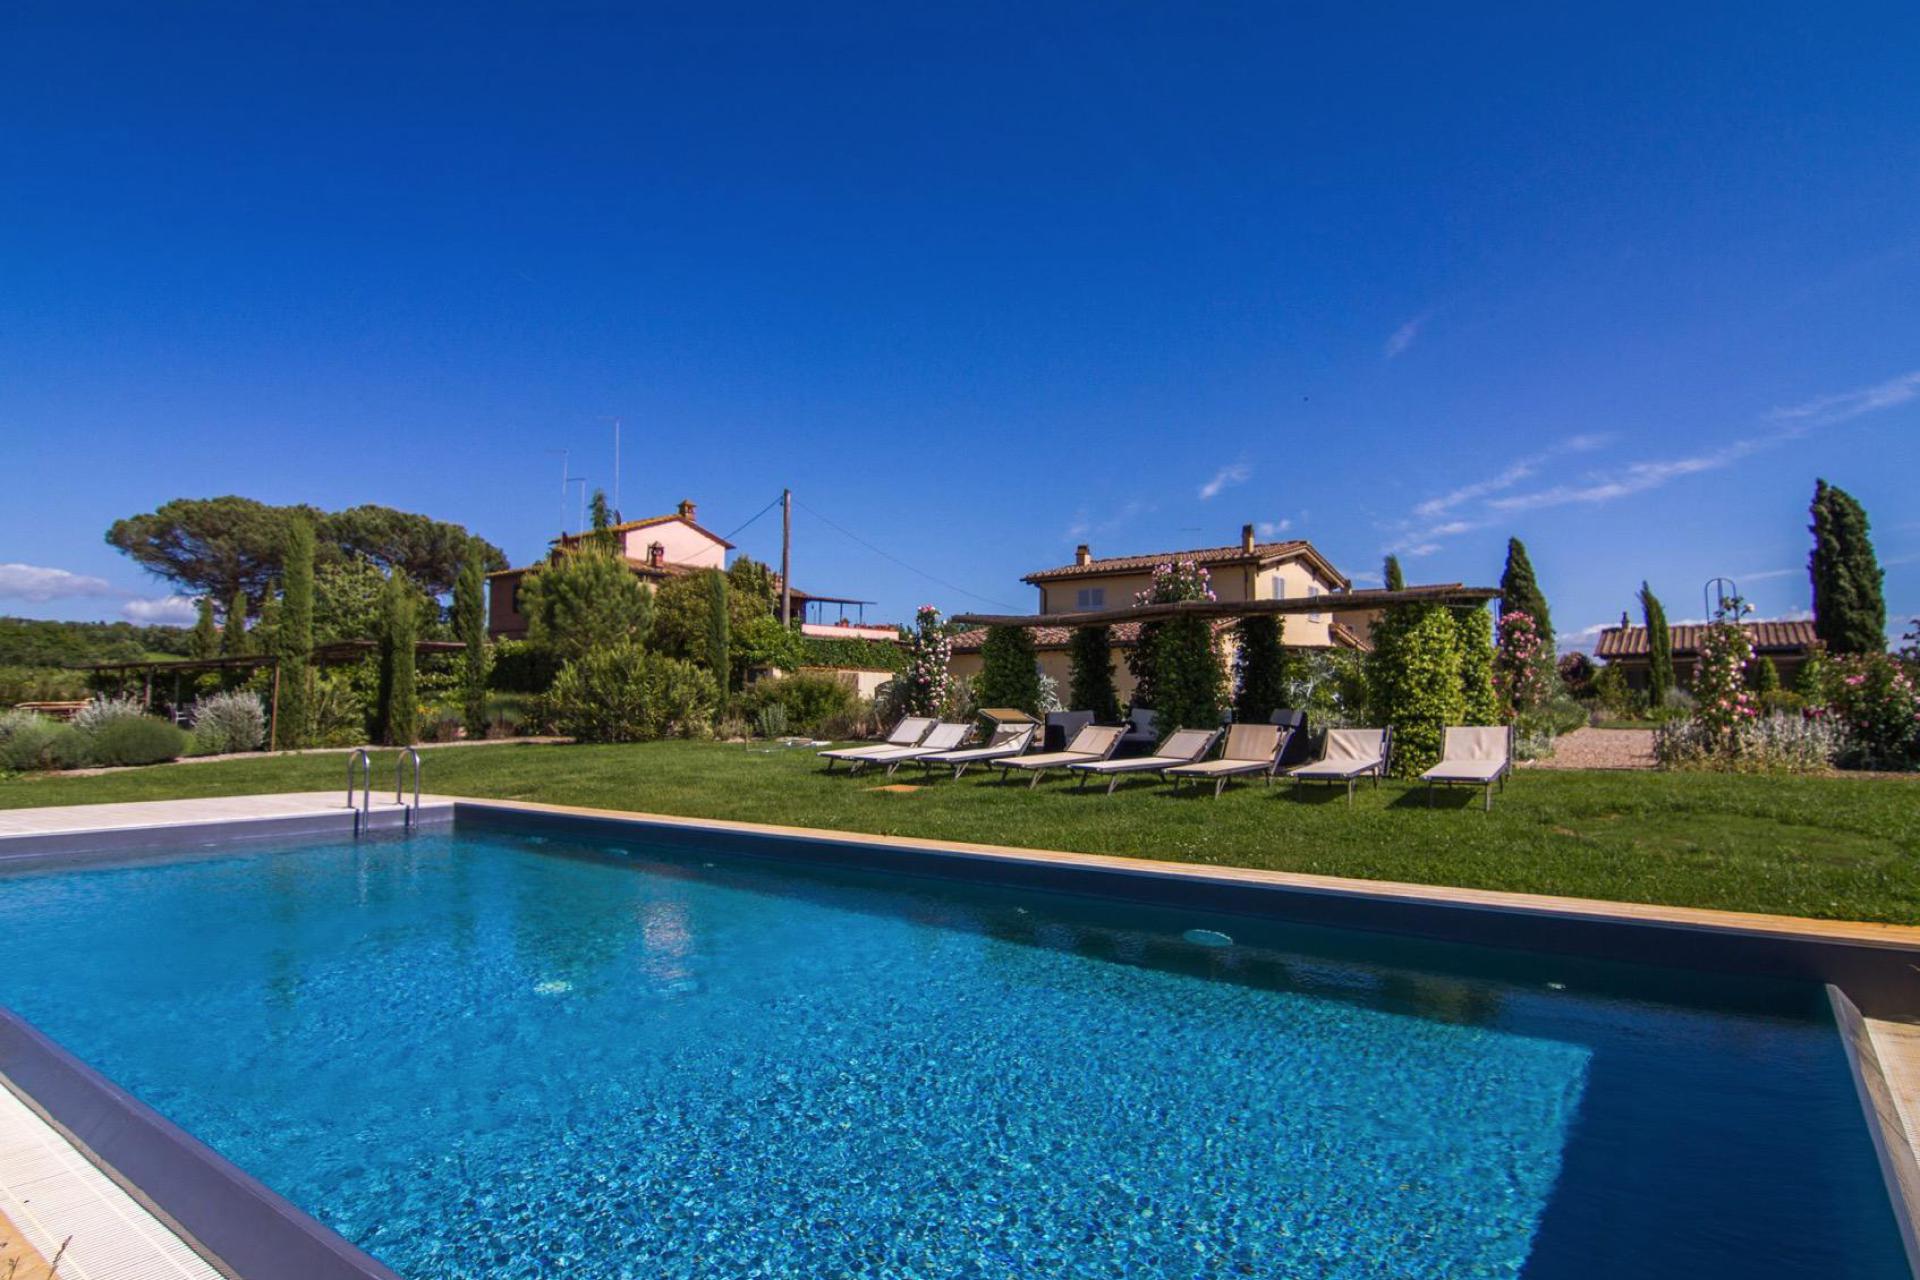 Agriturismo bij Siena met zwembad en luxe appartementen